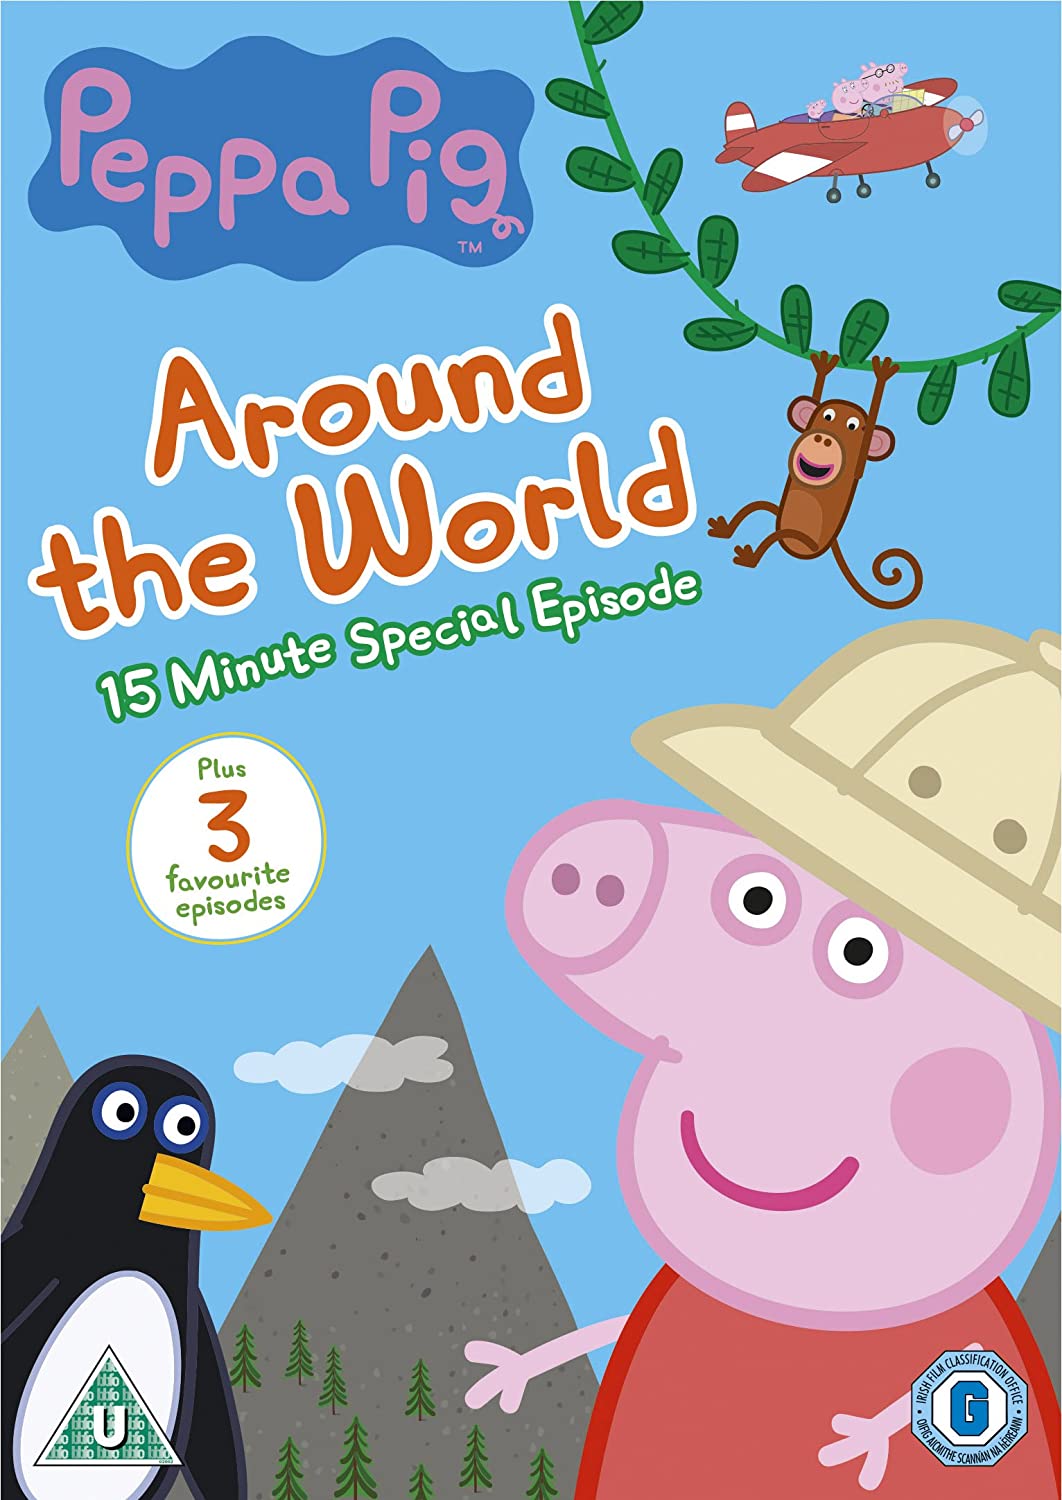 Peppa Pig: Around The World (DVD)